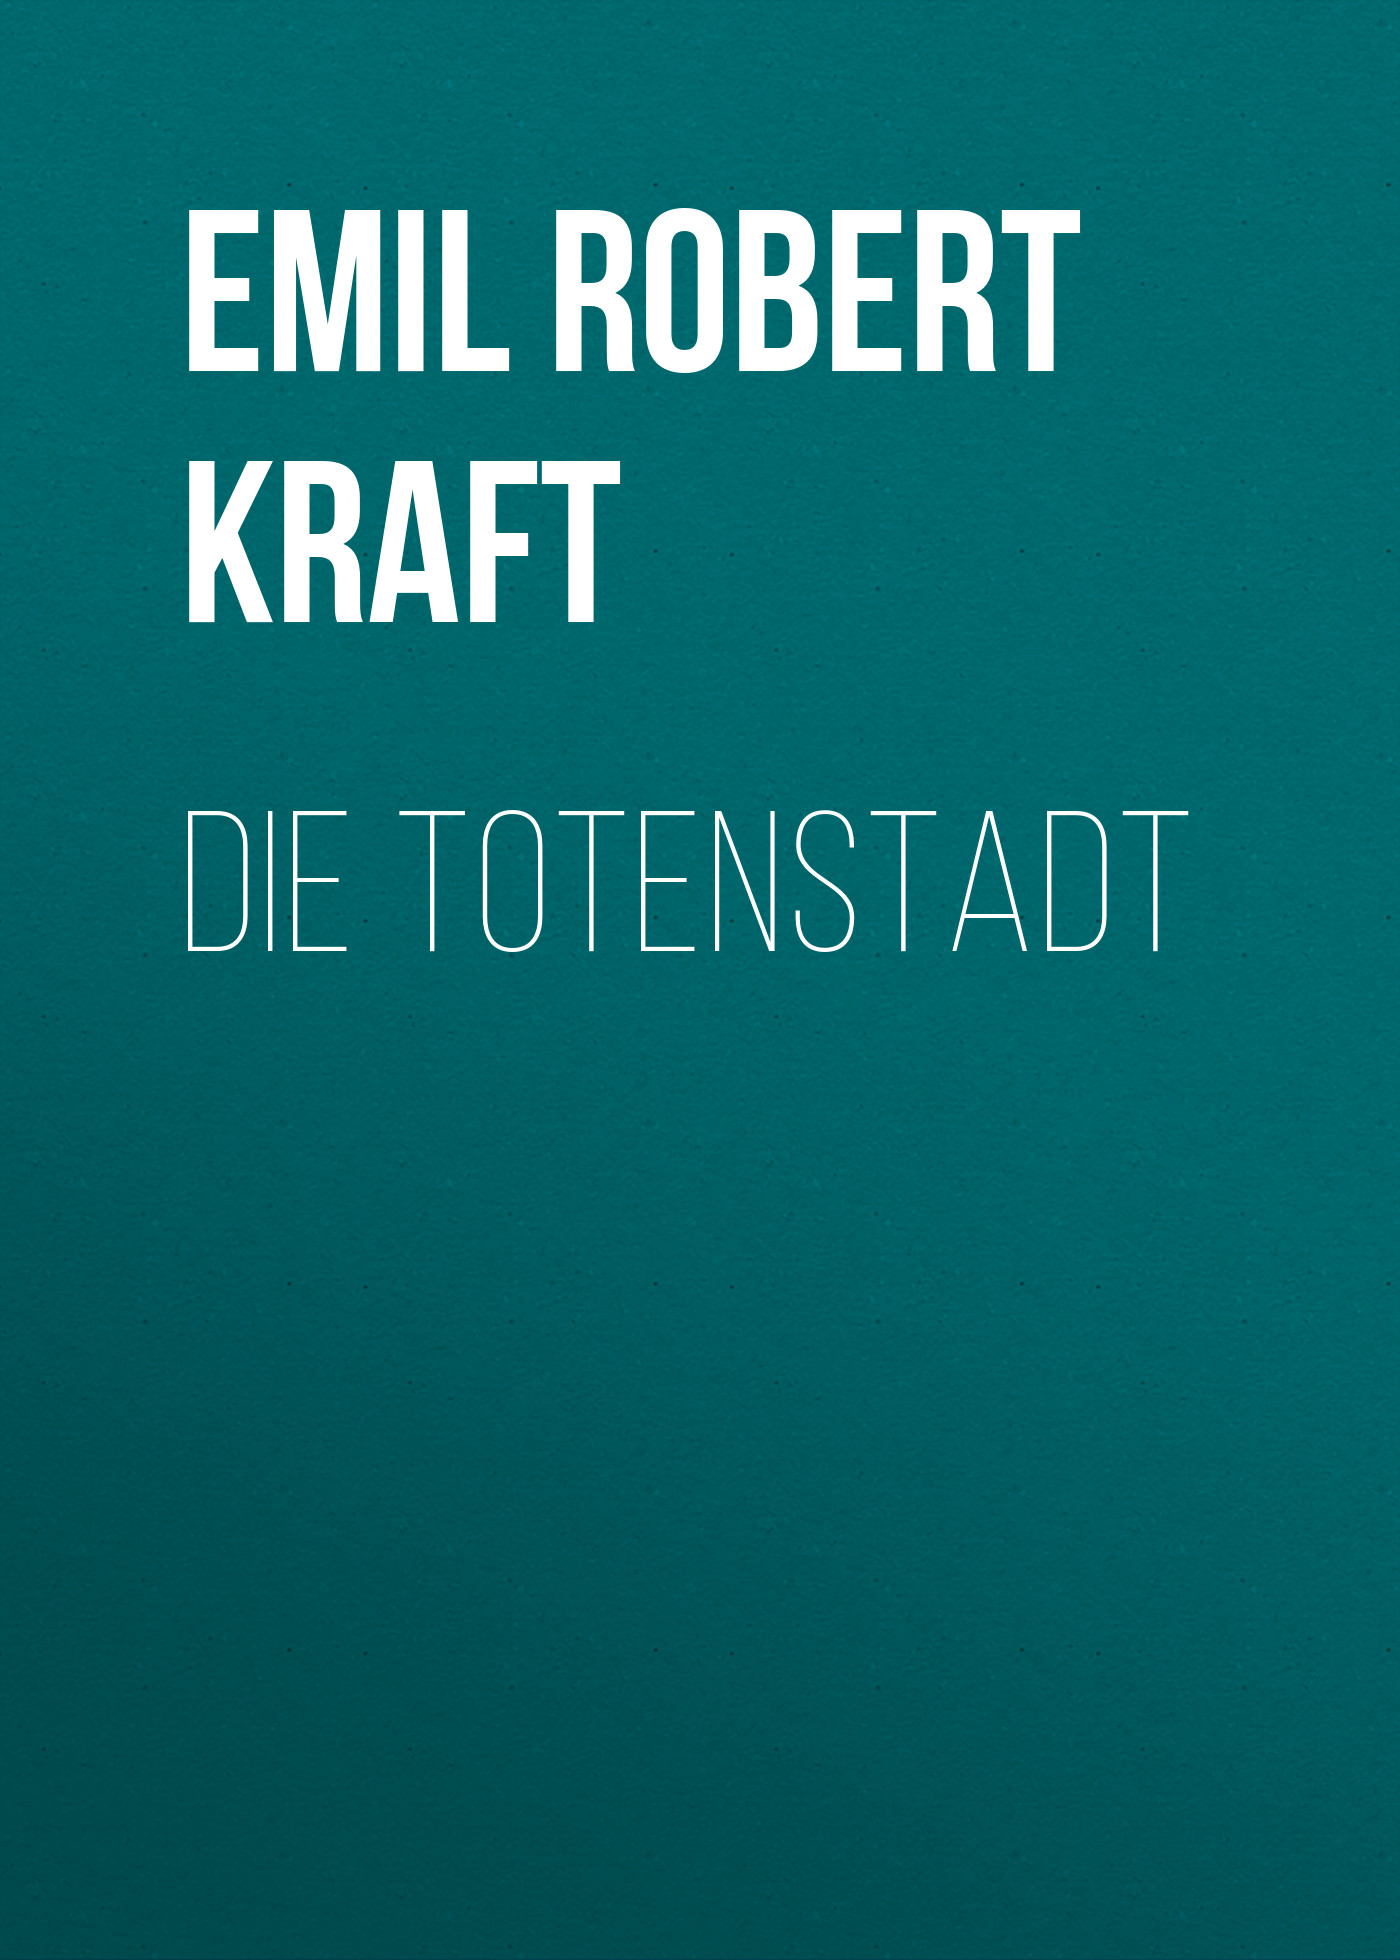 Книга Die Totenstadt из серии , созданная Emil Robert Kraft, может относится к жанру Зарубежная классика. Стоимость электронной книги Die Totenstadt с идентификатором 48633180 составляет 0 руб.